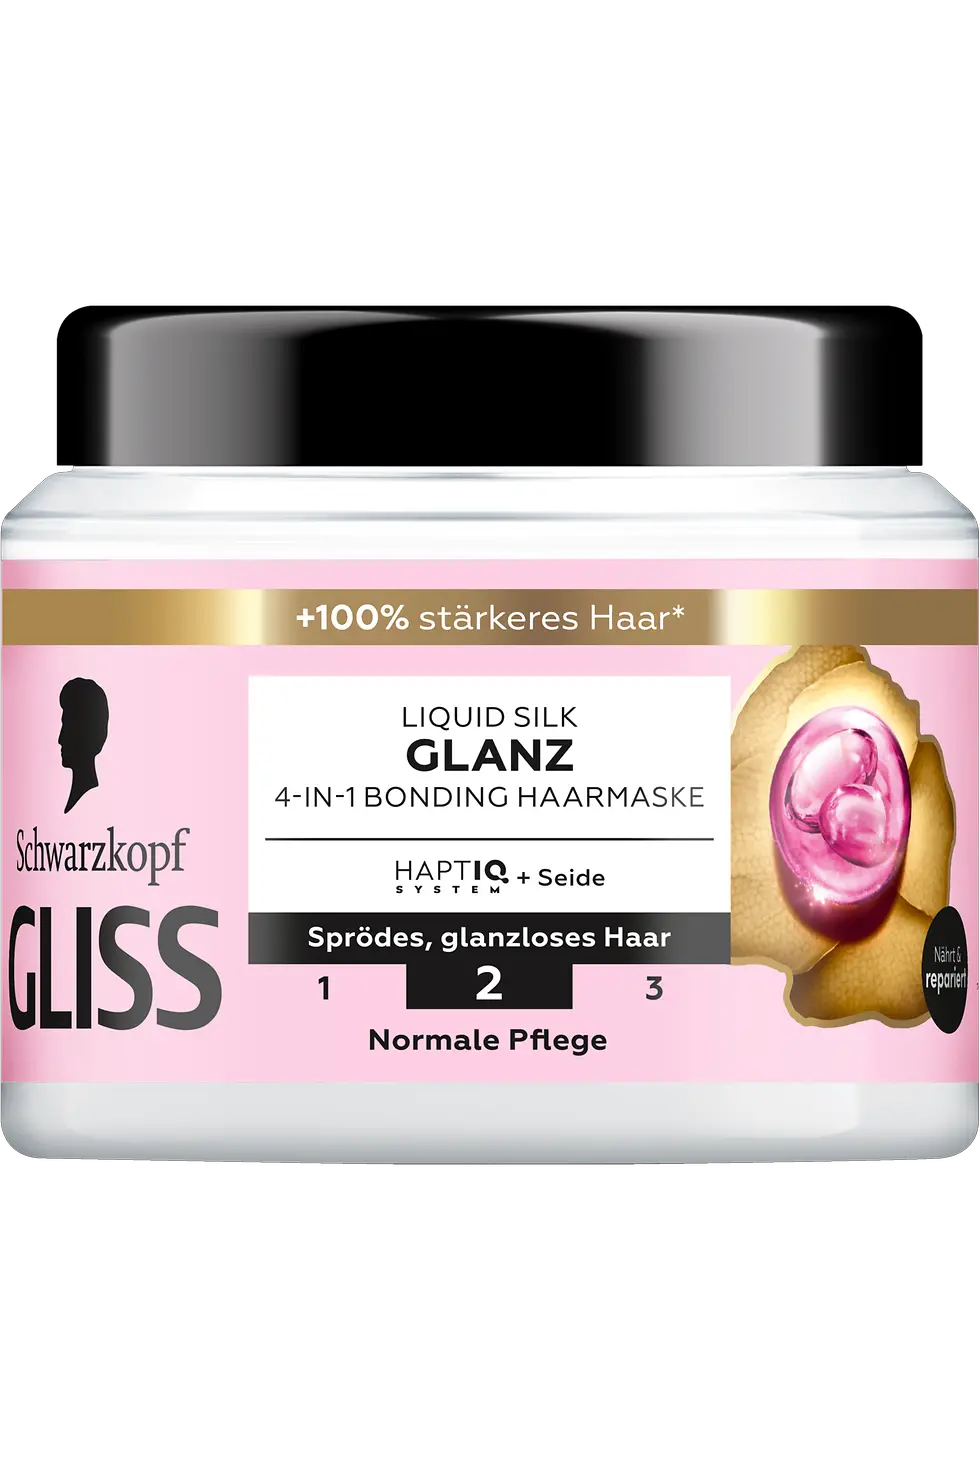 
Gliss Liquid Silk Glanz 4-in-1 Bonding Haarmaske